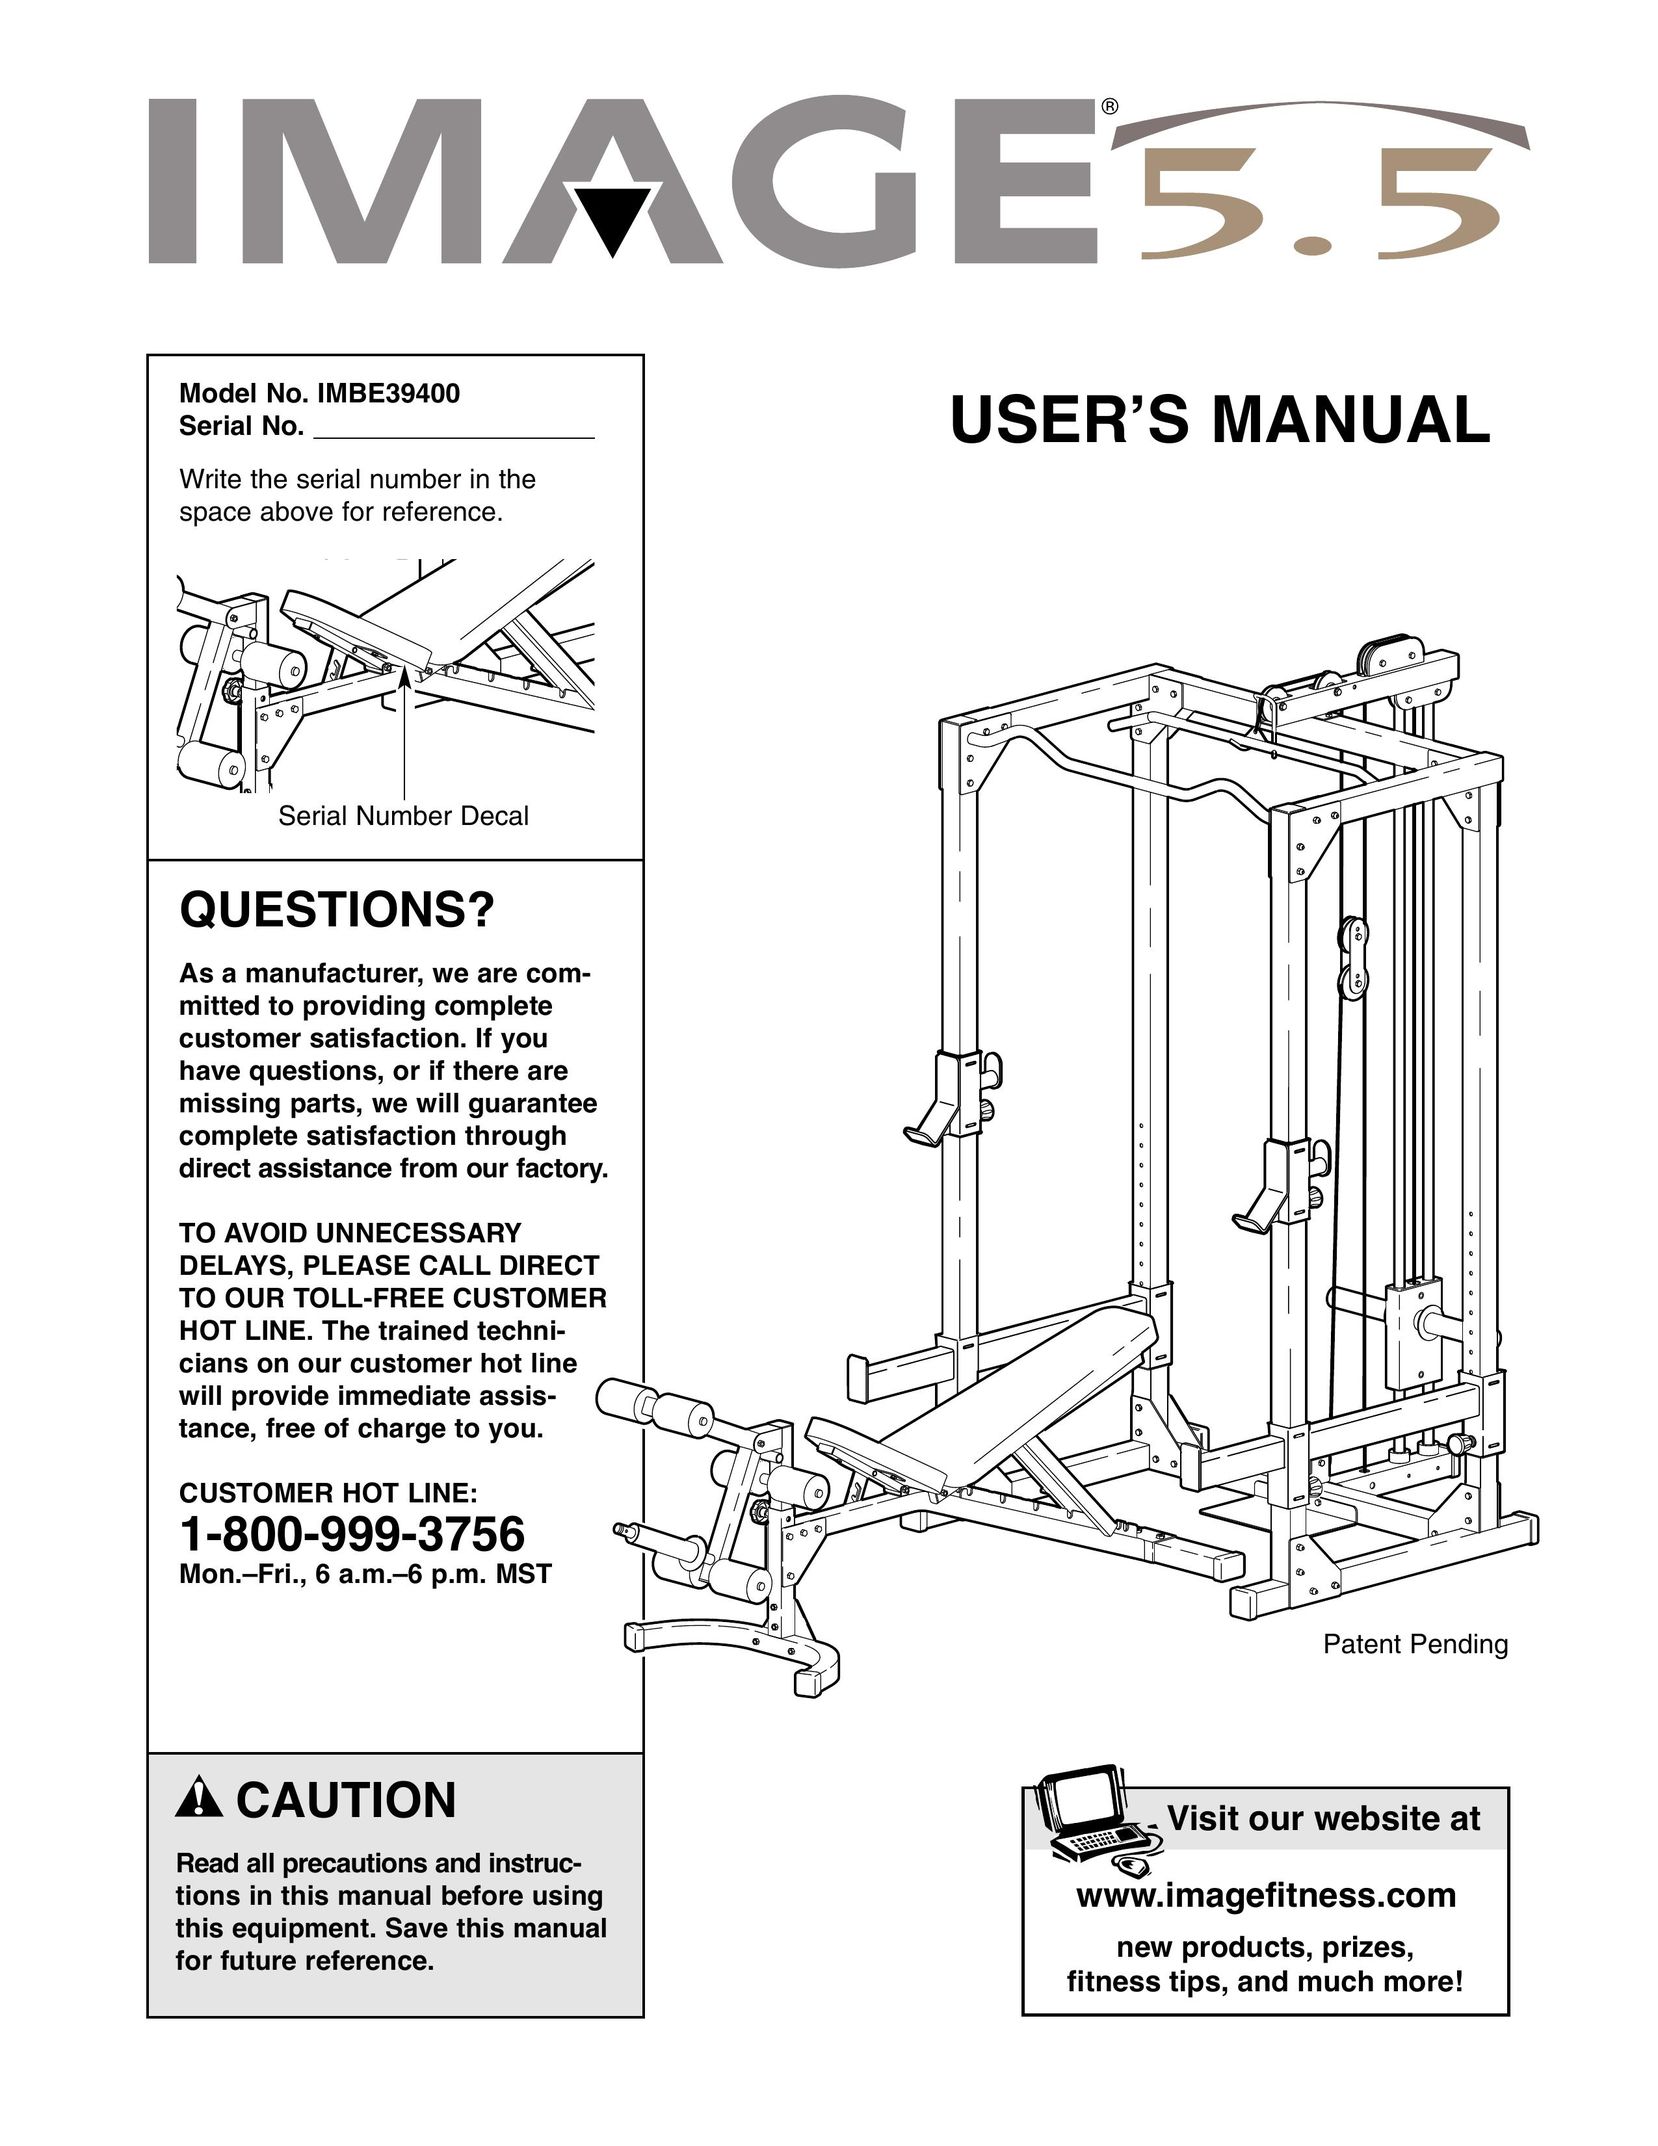 Image IMBE39400 Home Gym User Manual